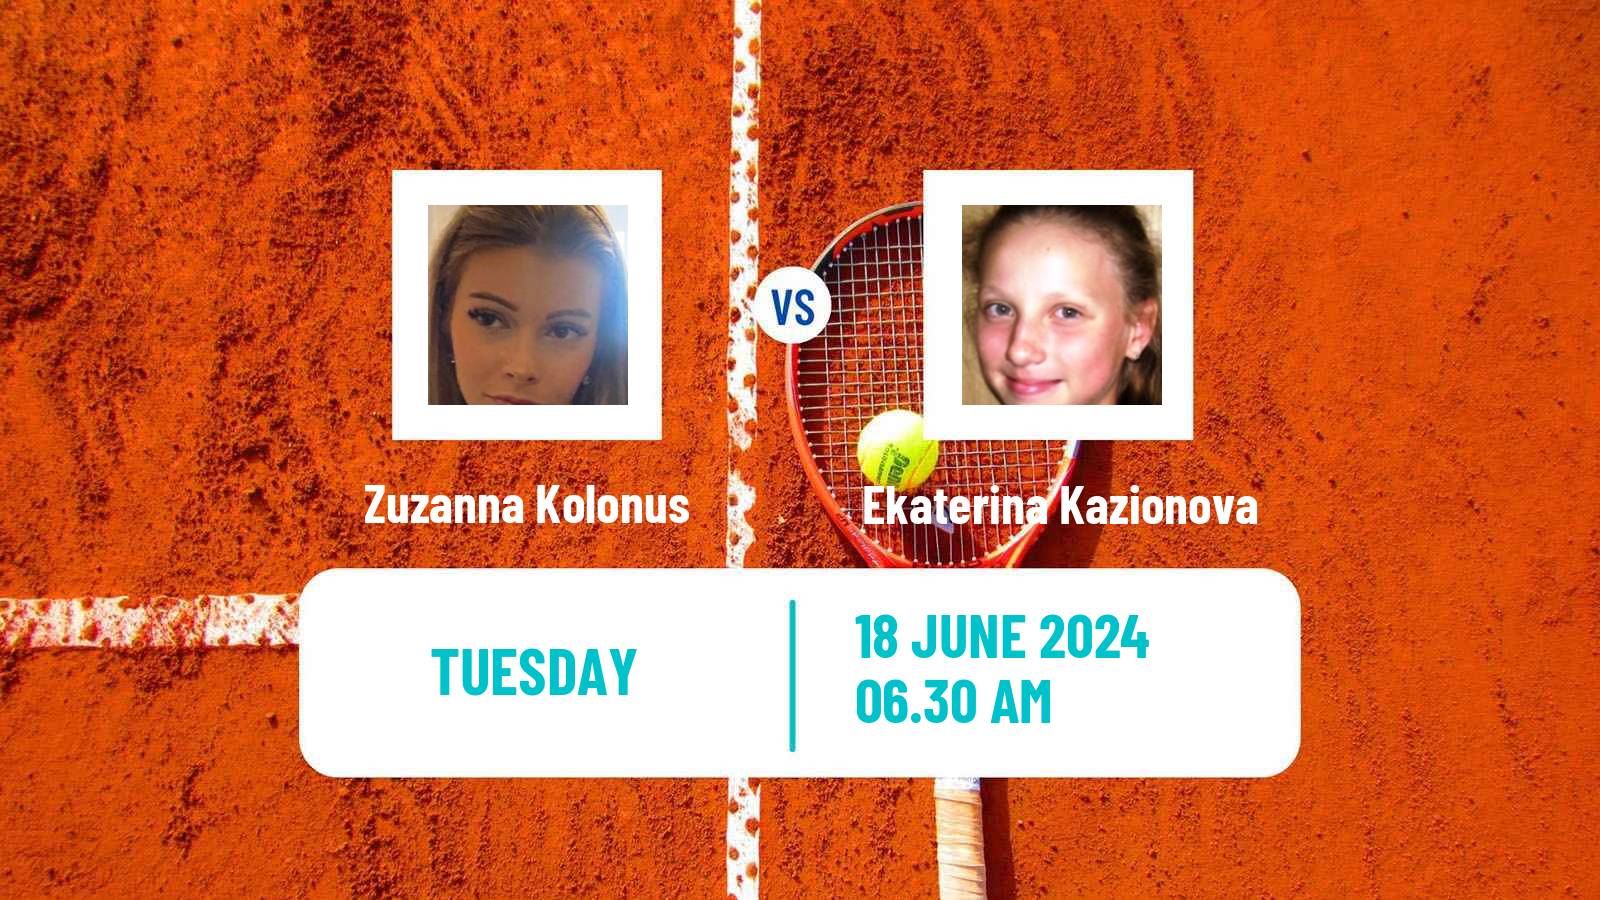 Tennis ITF W15 Kursumlijska Banja 8 Women Zuzanna Kolonus - Ekaterina Kazionova